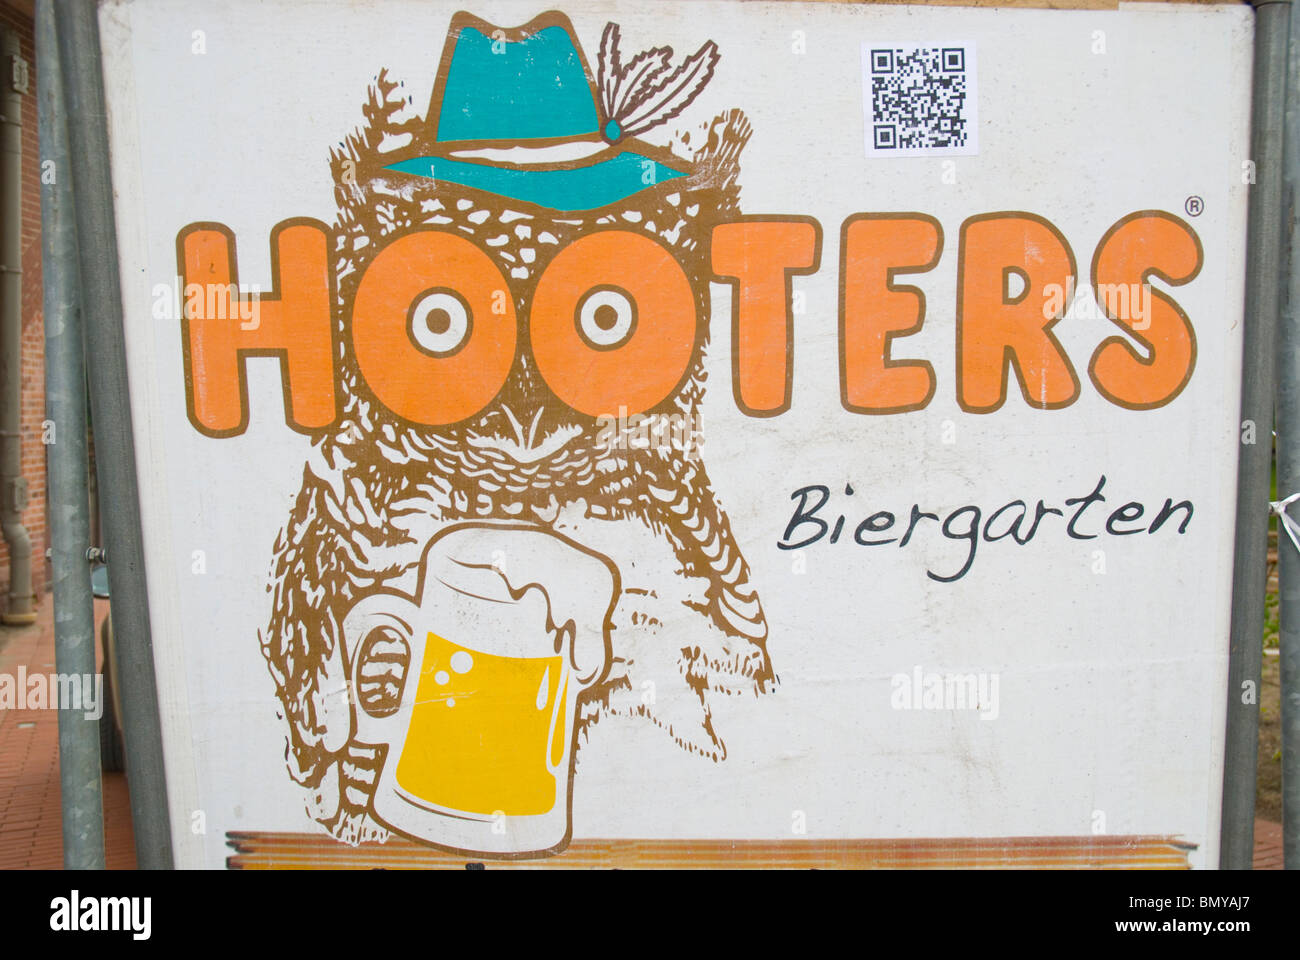 Hooters bar beergarden sign Tiergarten Berlin Germany Europe Stock Photo